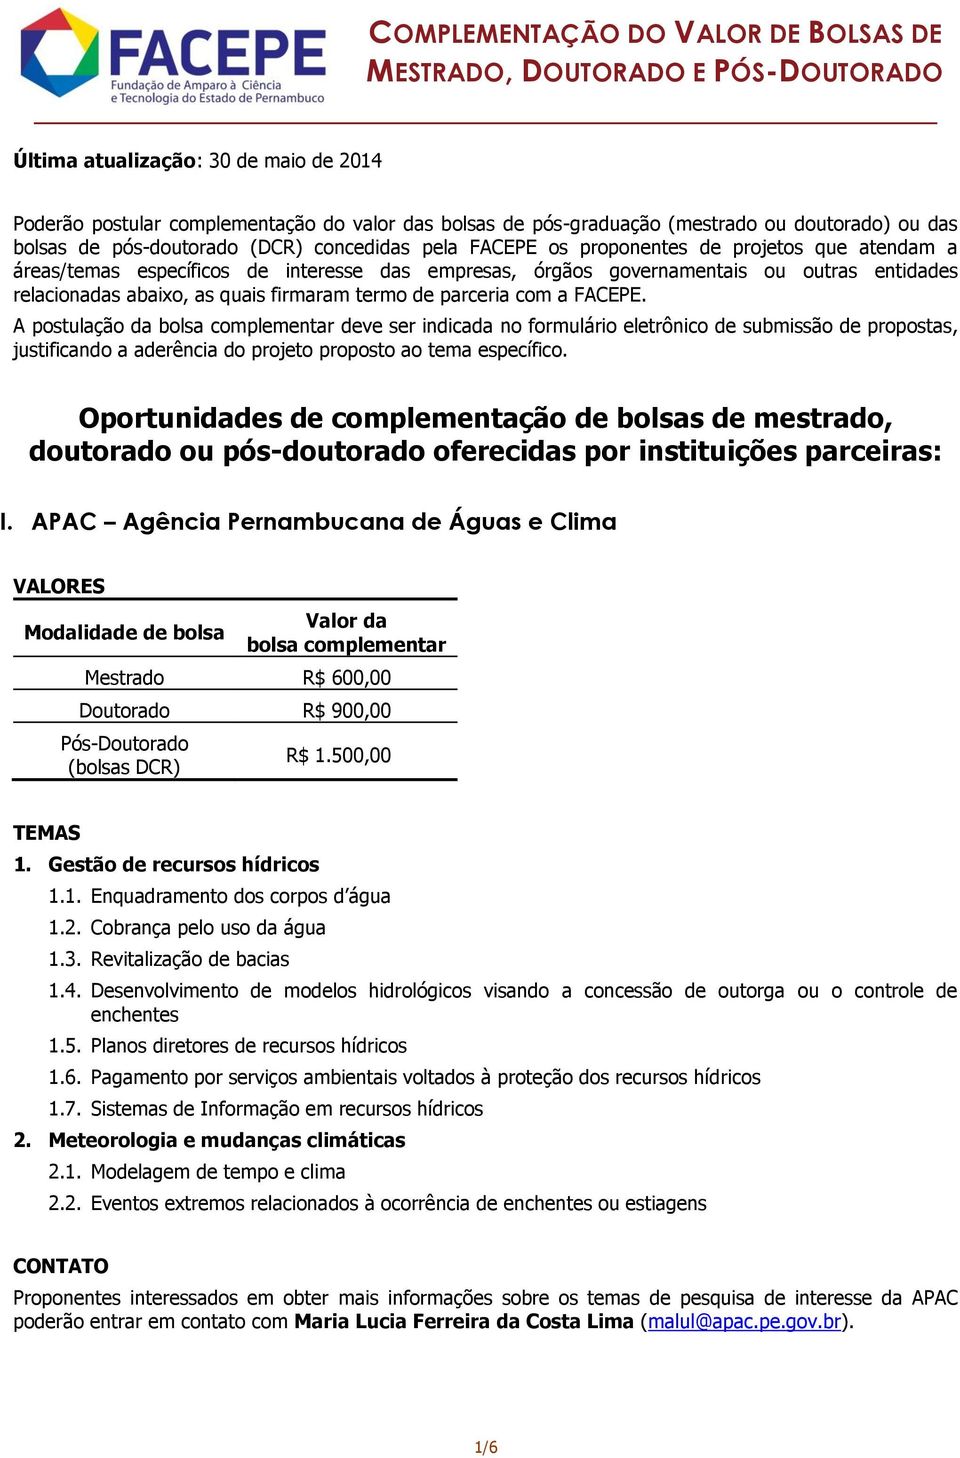 COMPLEMENTAÇÃO DO VALOR DE BOLSAS DE MESTRADO, DOUTORADO E PÓS-DOUTORADO -  PDF Free Download